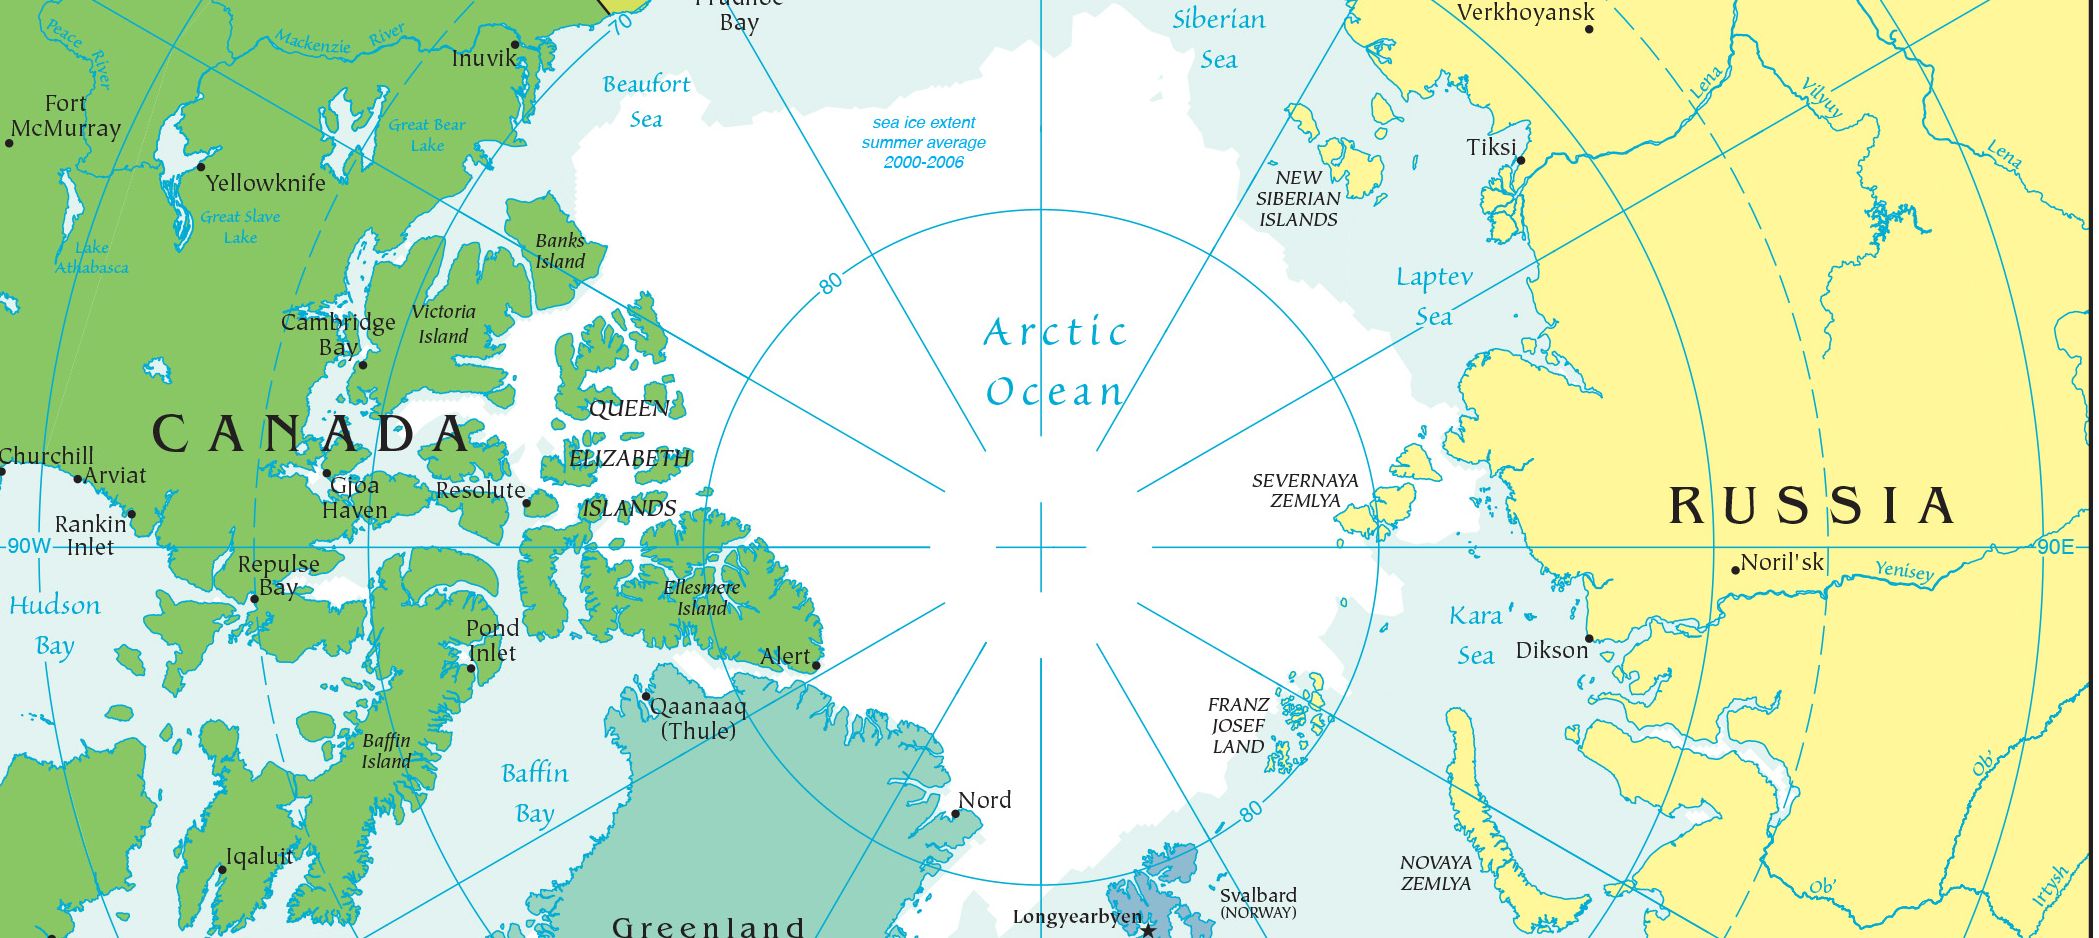 ¿Habrá un conflicto fronterizo en el Océano Ártico?